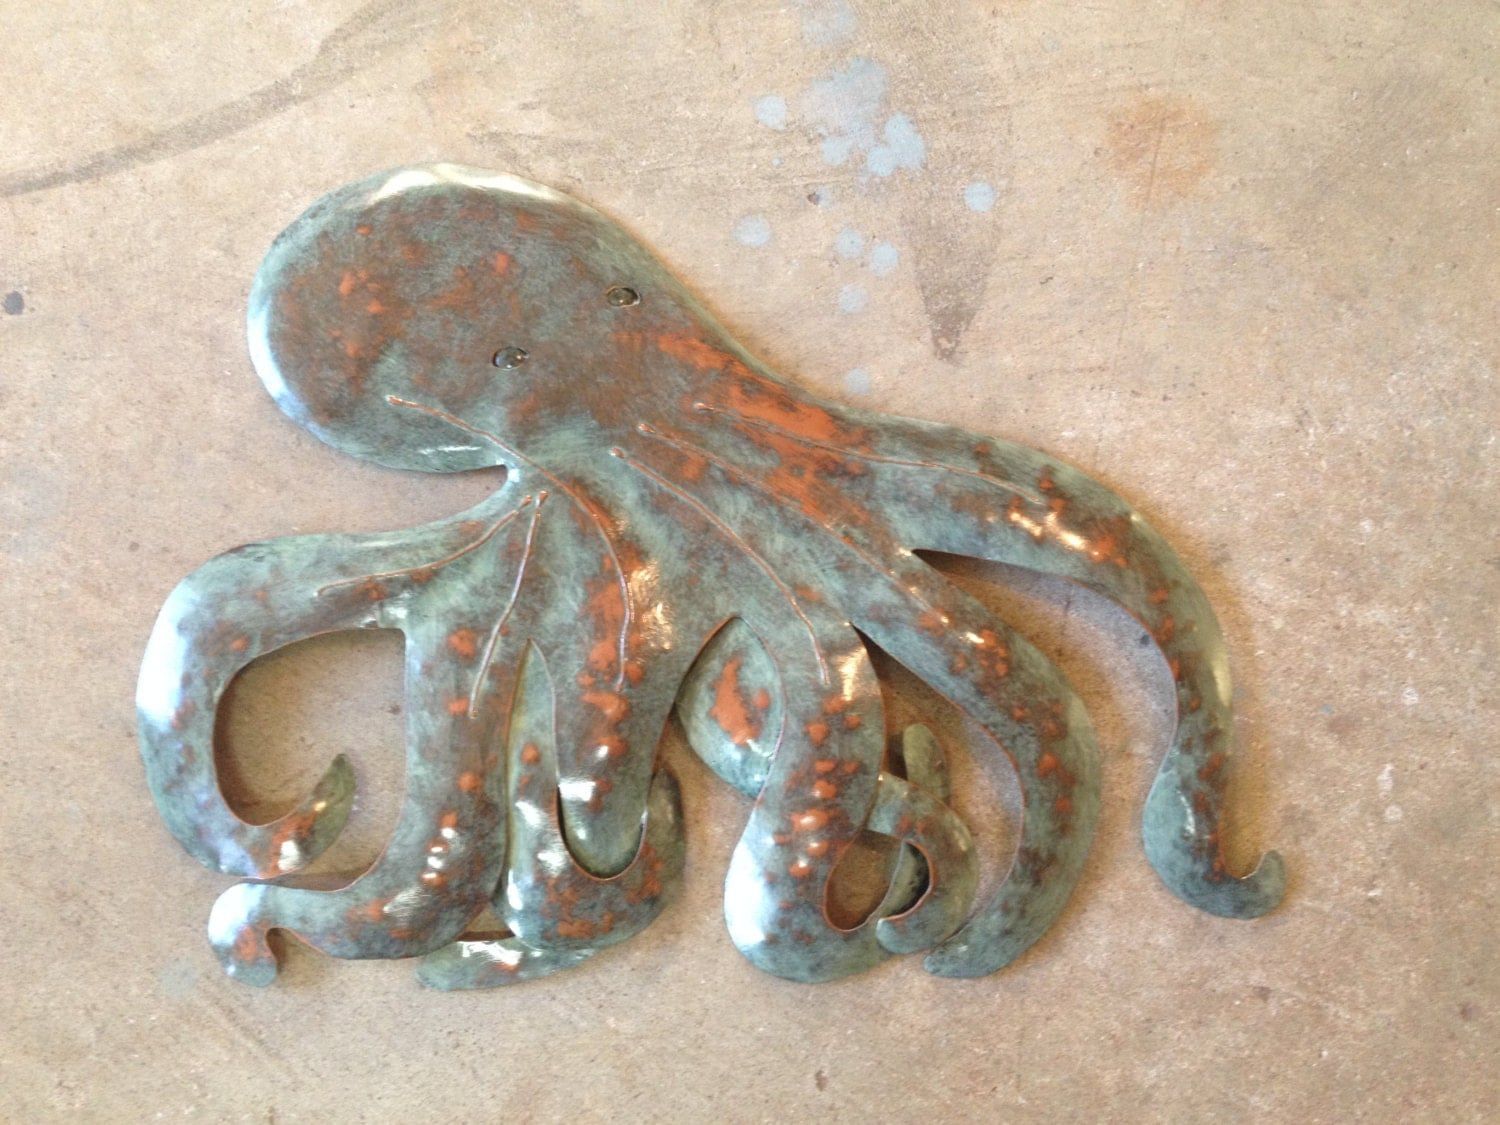 Octopus Metal Art Wall Sculpture Tropicalsallenbachfishart Intended For Octopus Metal Wall Sculptures (View 8 of 15)